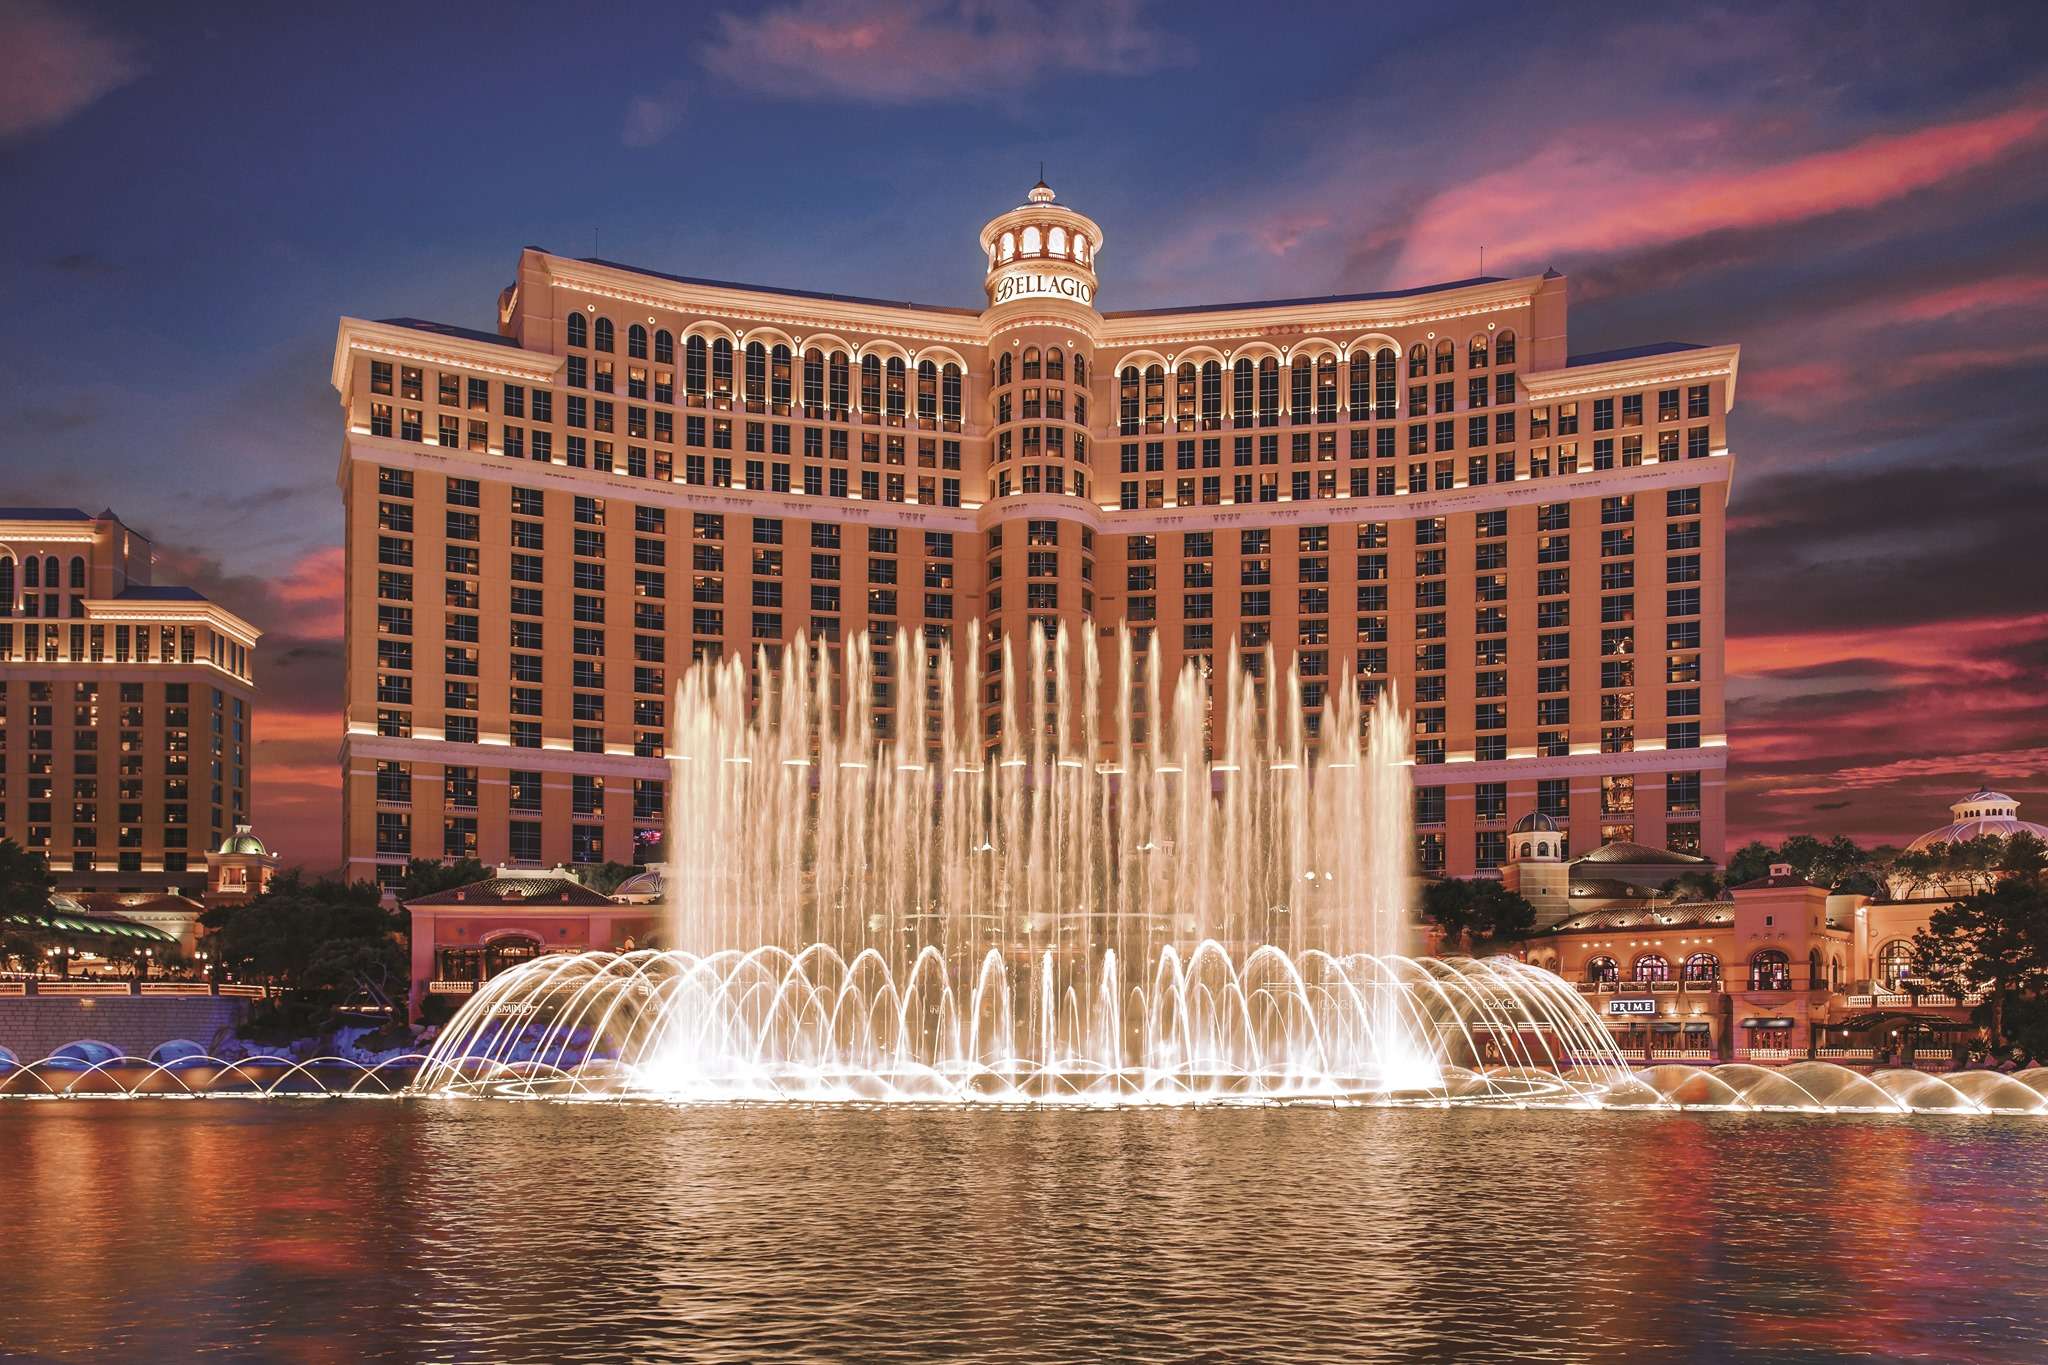 Conociendo ð Bellagio - Conoce los hoteles más famosos de Las Vegas